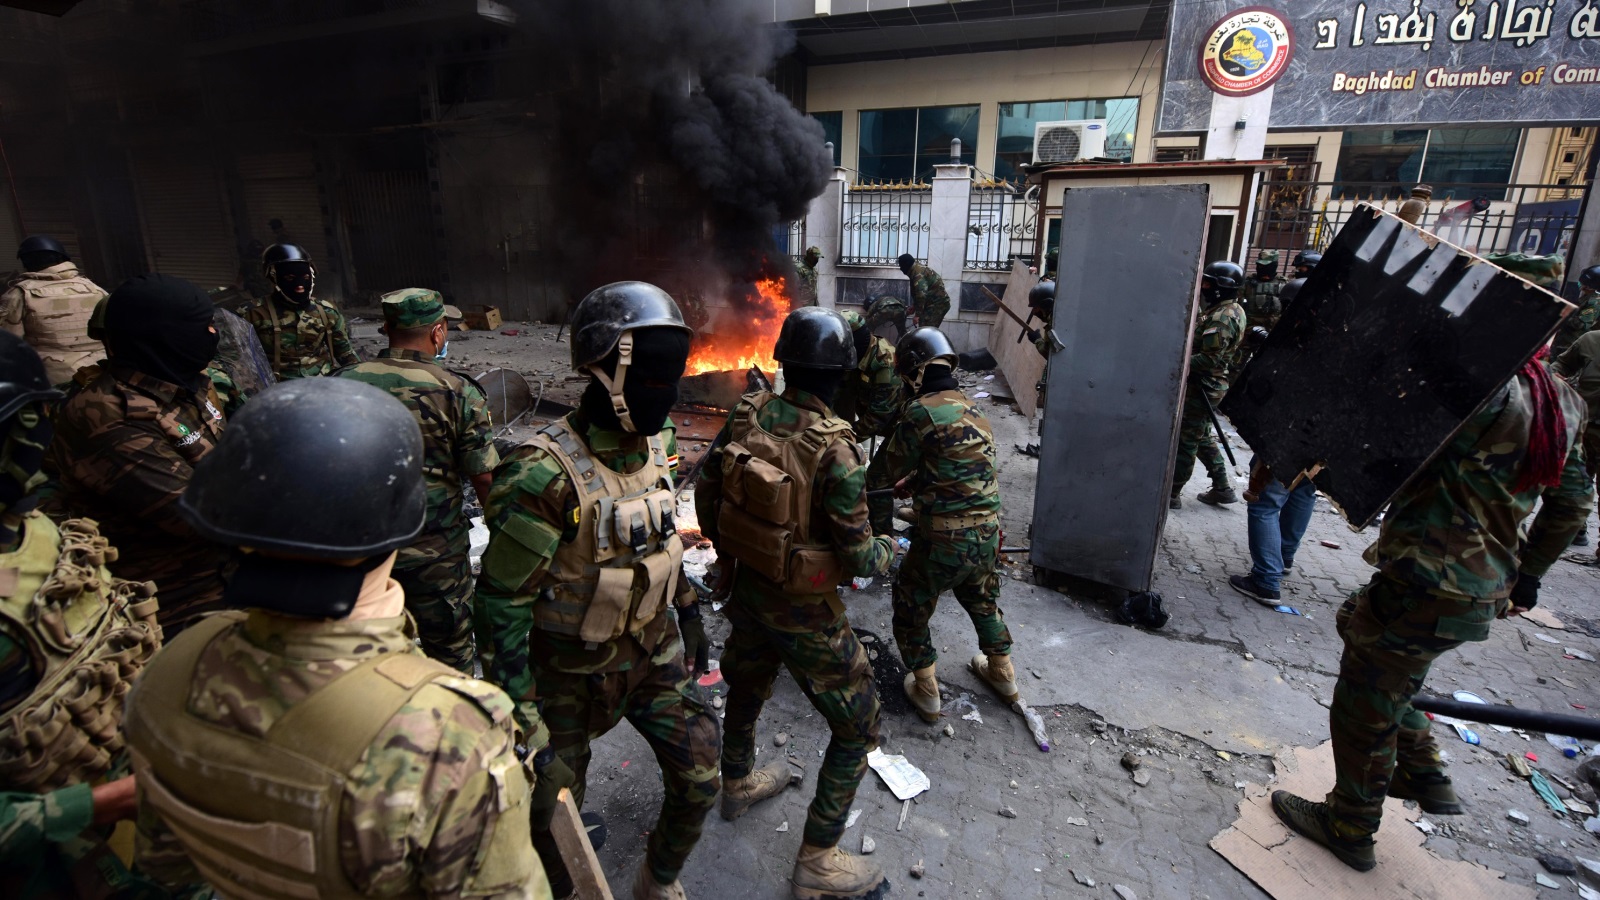 ‪عناصر من قوات الأمن العراقية أثناء مواجهتهم متظاهرين في شارع الرشيد ببغداد‬ (الأوروبية)